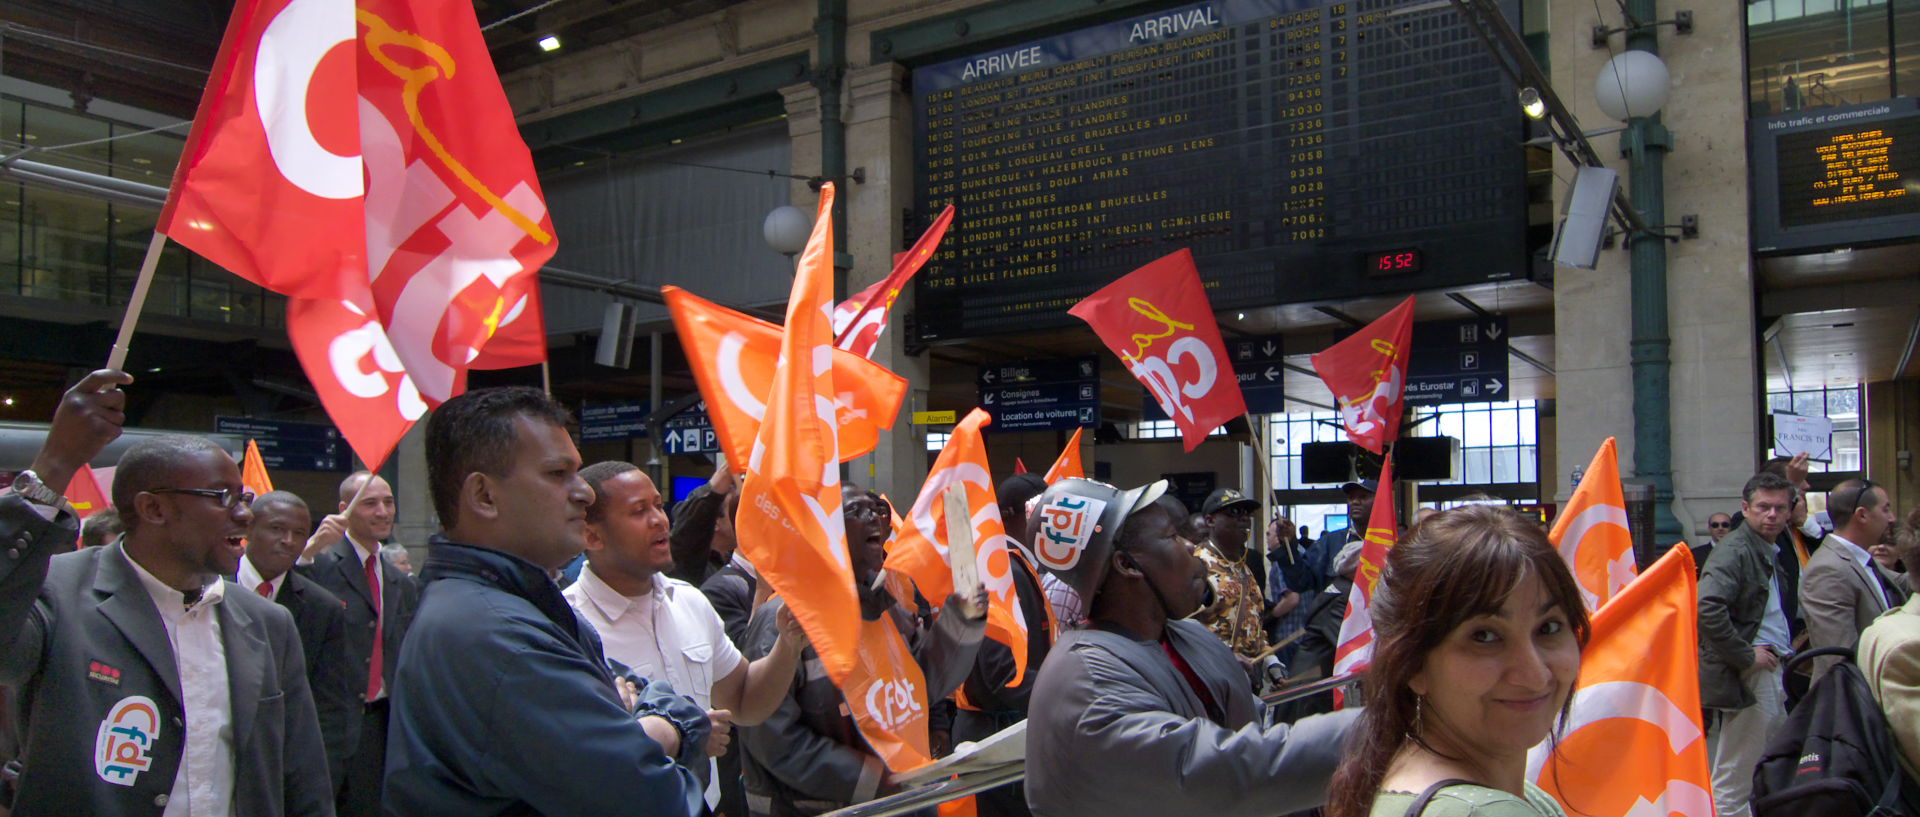 Photo de manifestation à l'arrivée de l'Eurostar, Paris, gare du Nord.